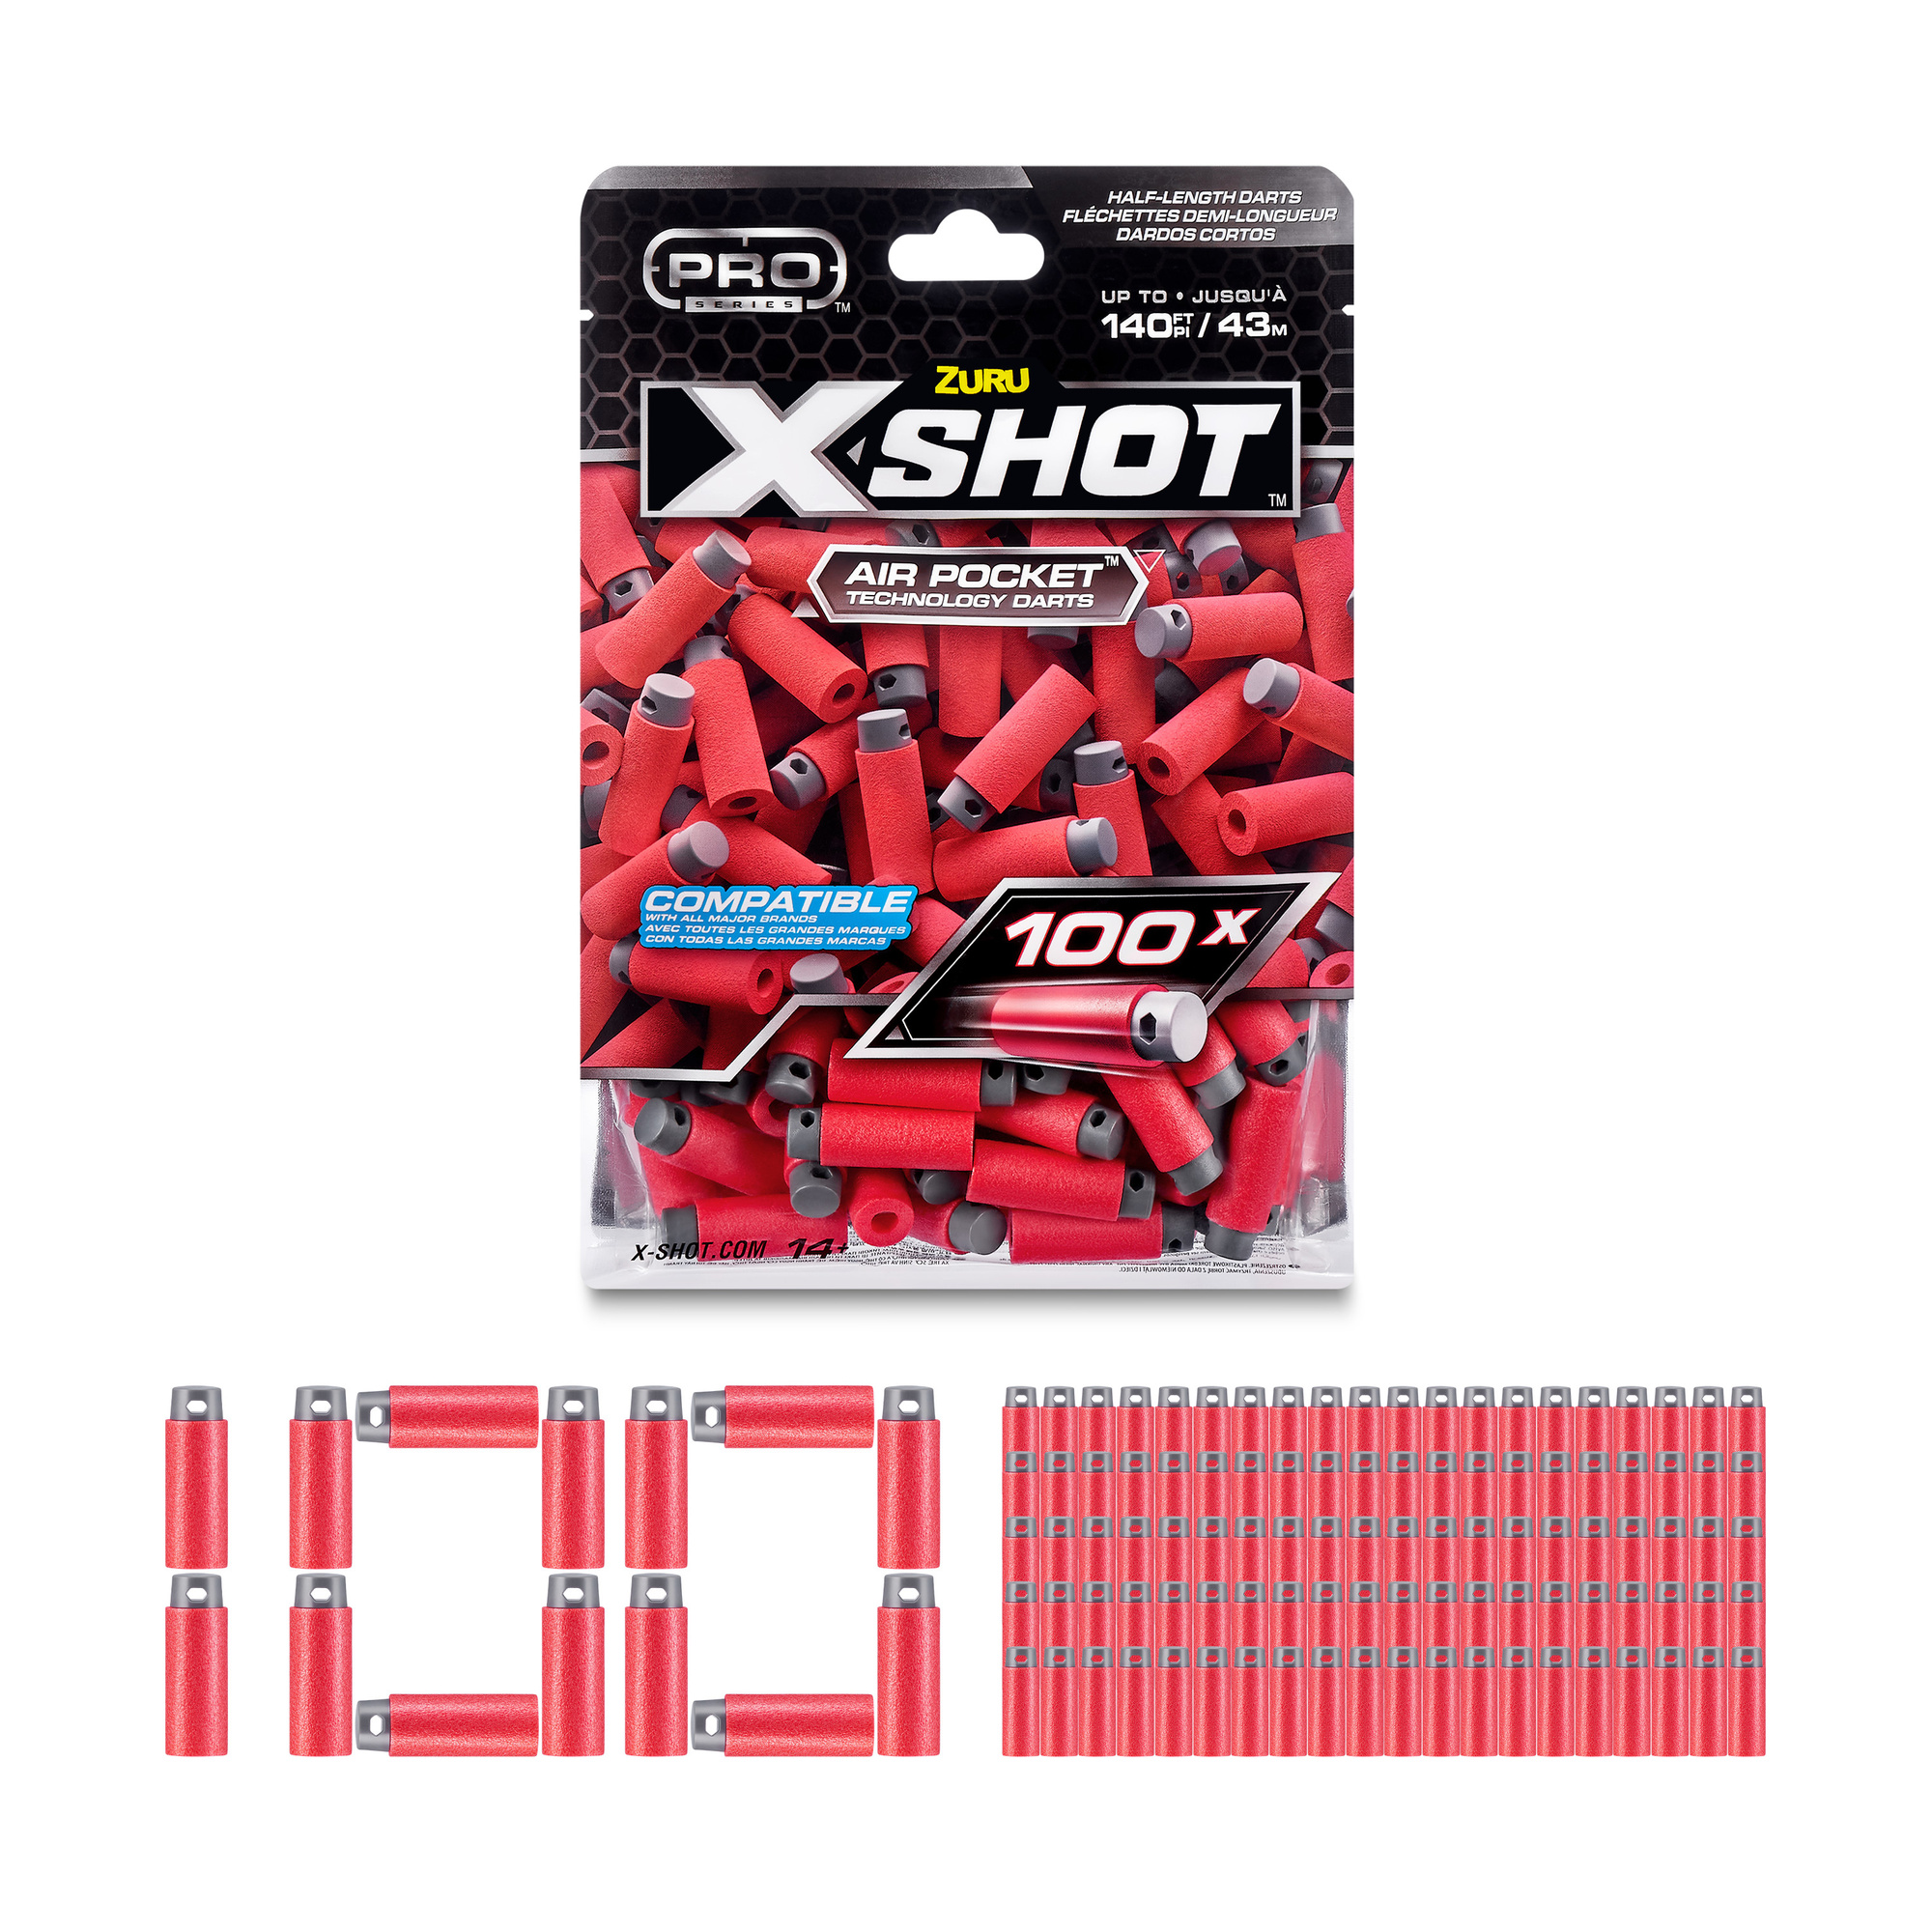 Pro-s1 dart refill (100 pcs) - SUN&SPORT